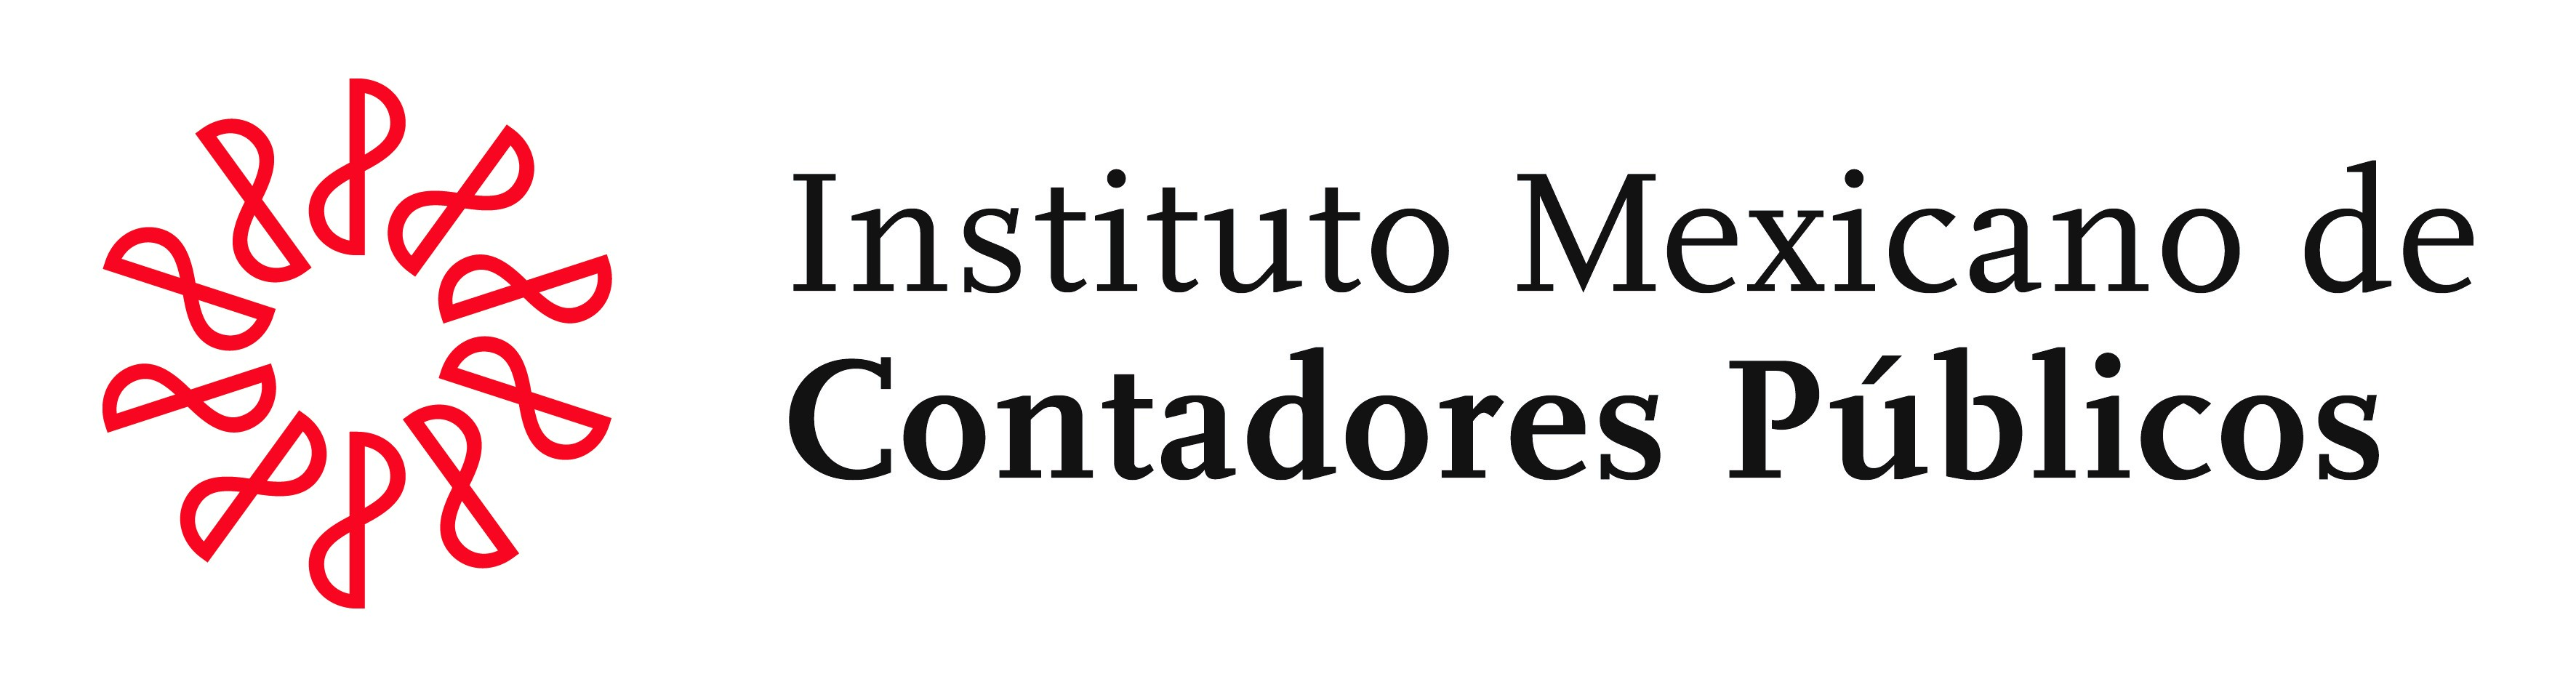   INSTITUTO MEXICANO DE CONTADORES PÚBLICOS